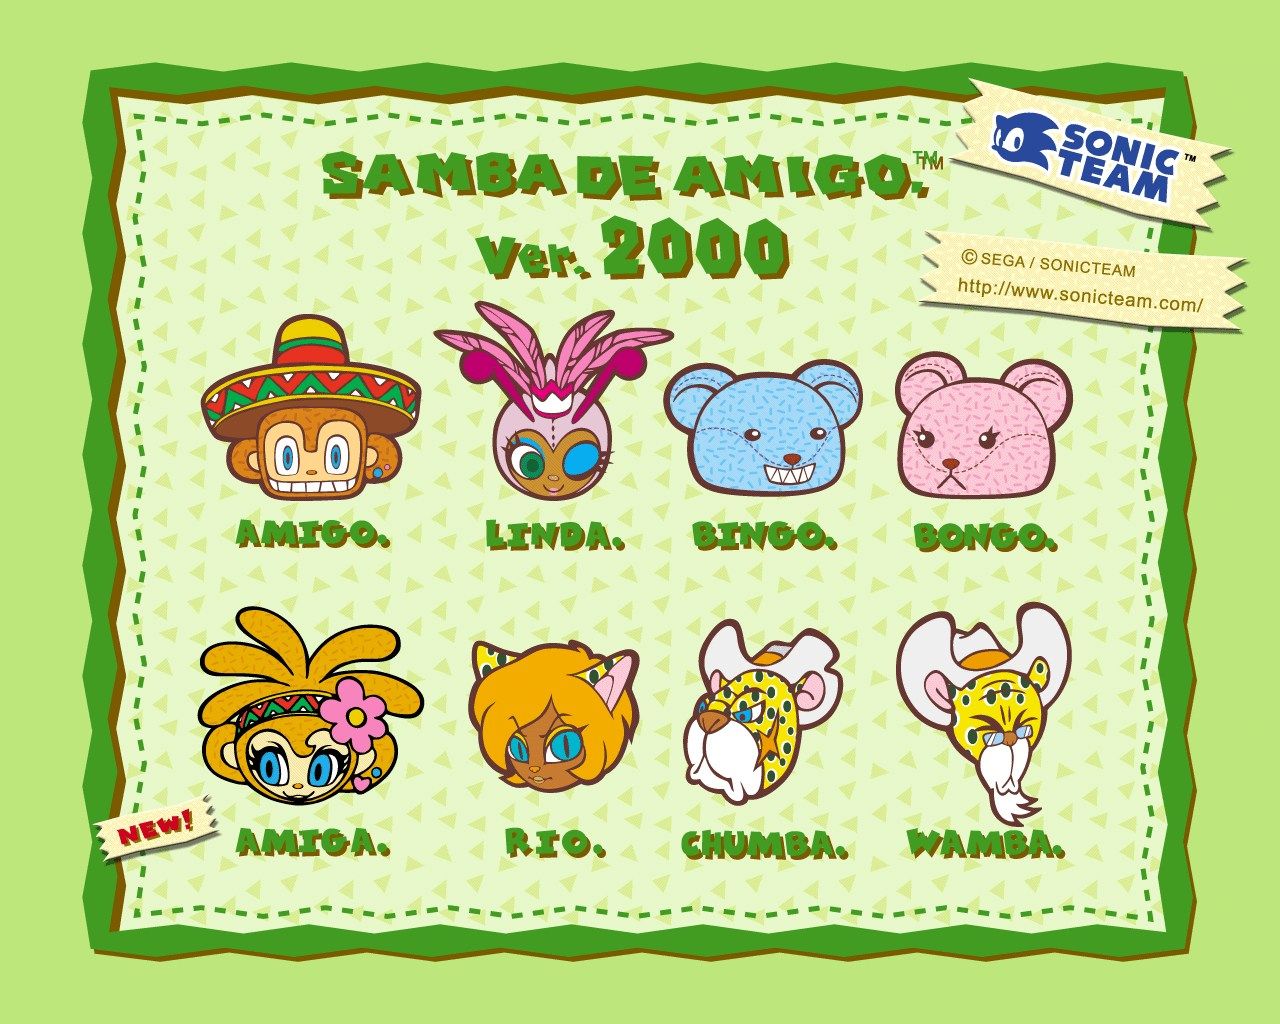 Shadow of a Hedgehog ./ Samba de Amigo Series Wallpaper